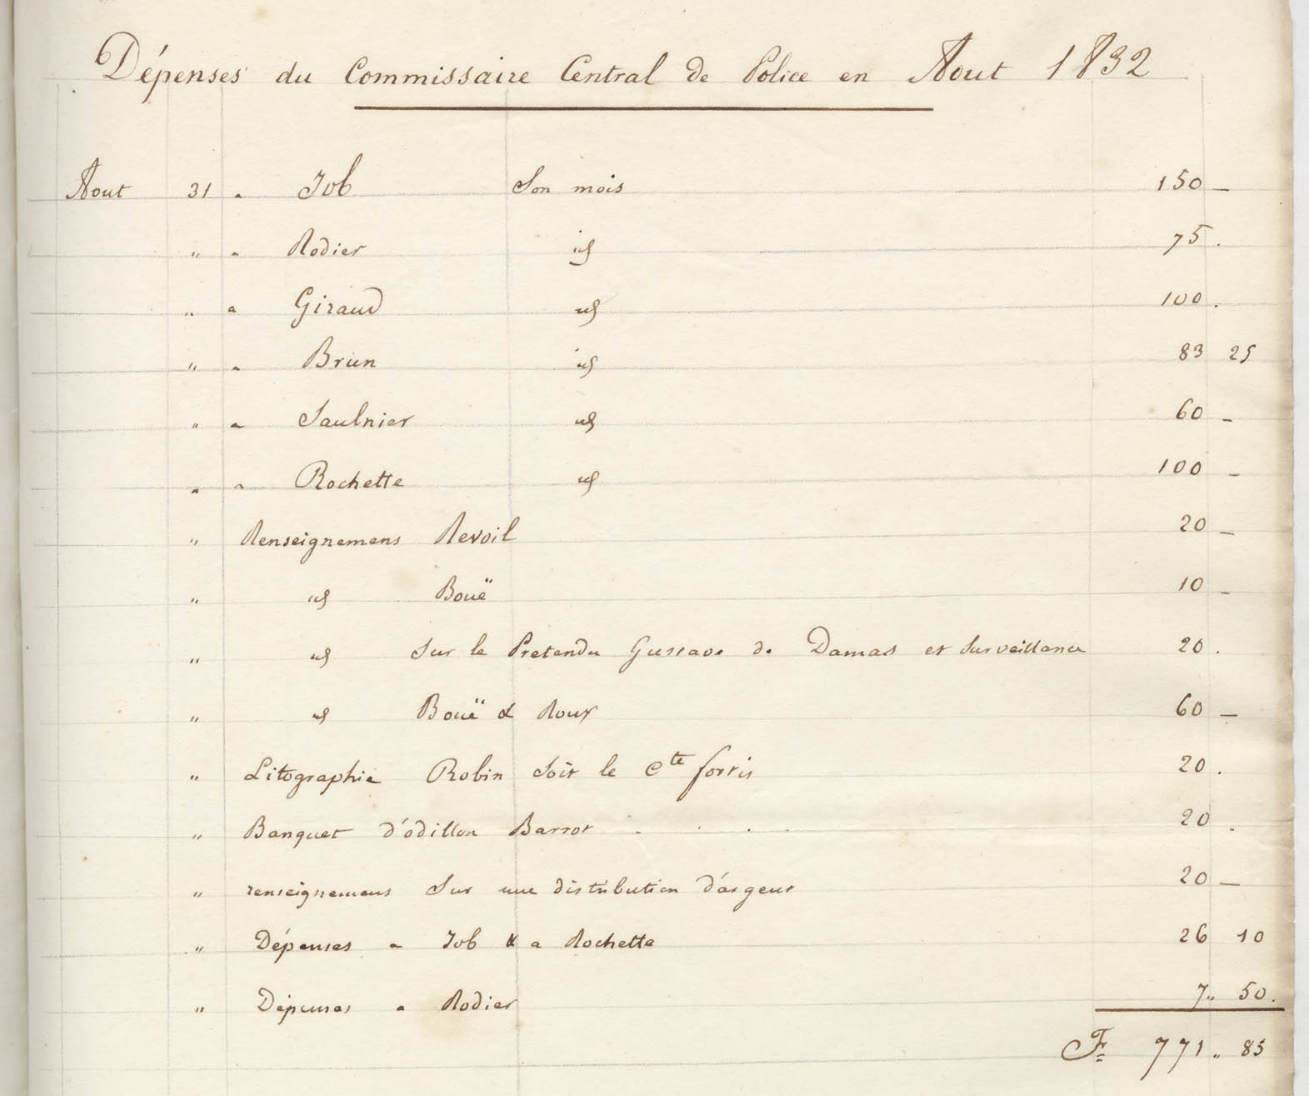 Dépenses du commissaire central de police en août 1832 (AML, 4II/4).